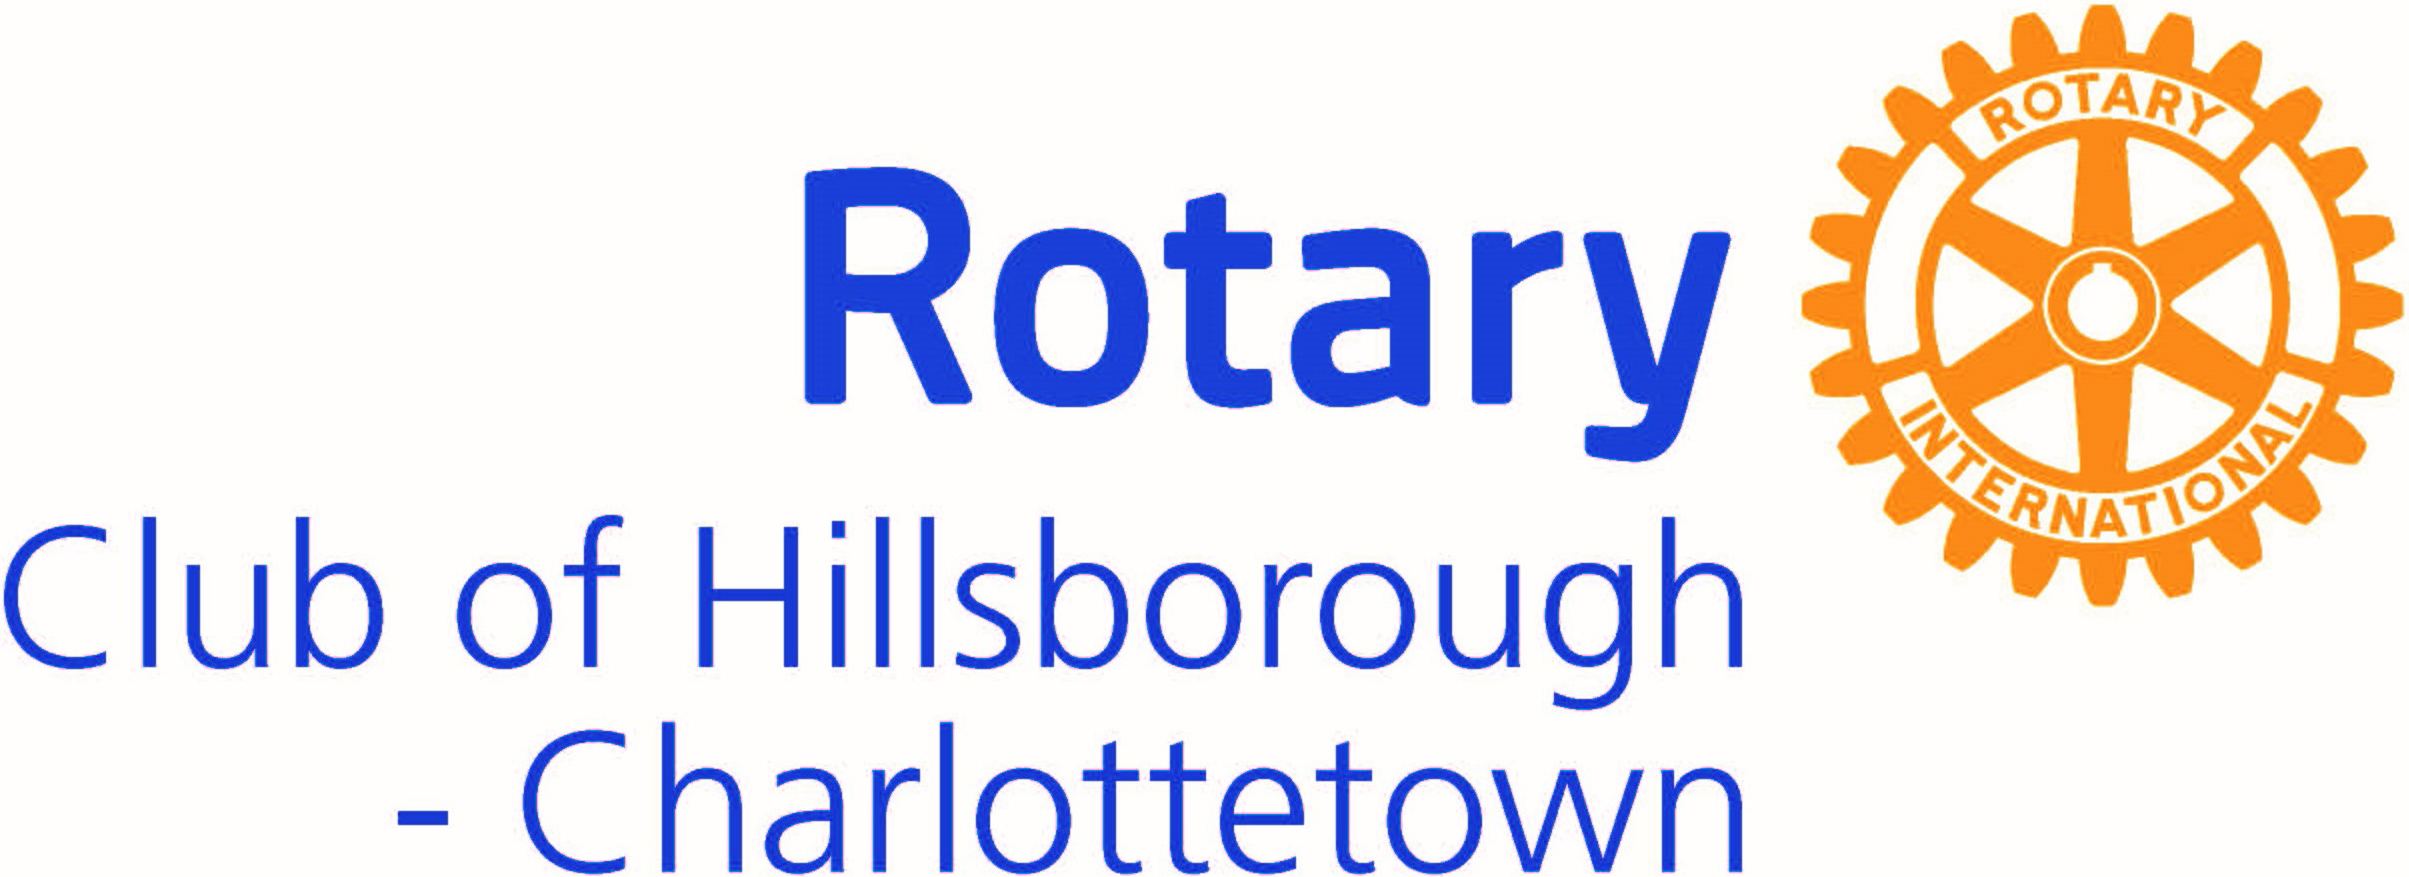 Rotary Club of Hillsborough - Charlottetown